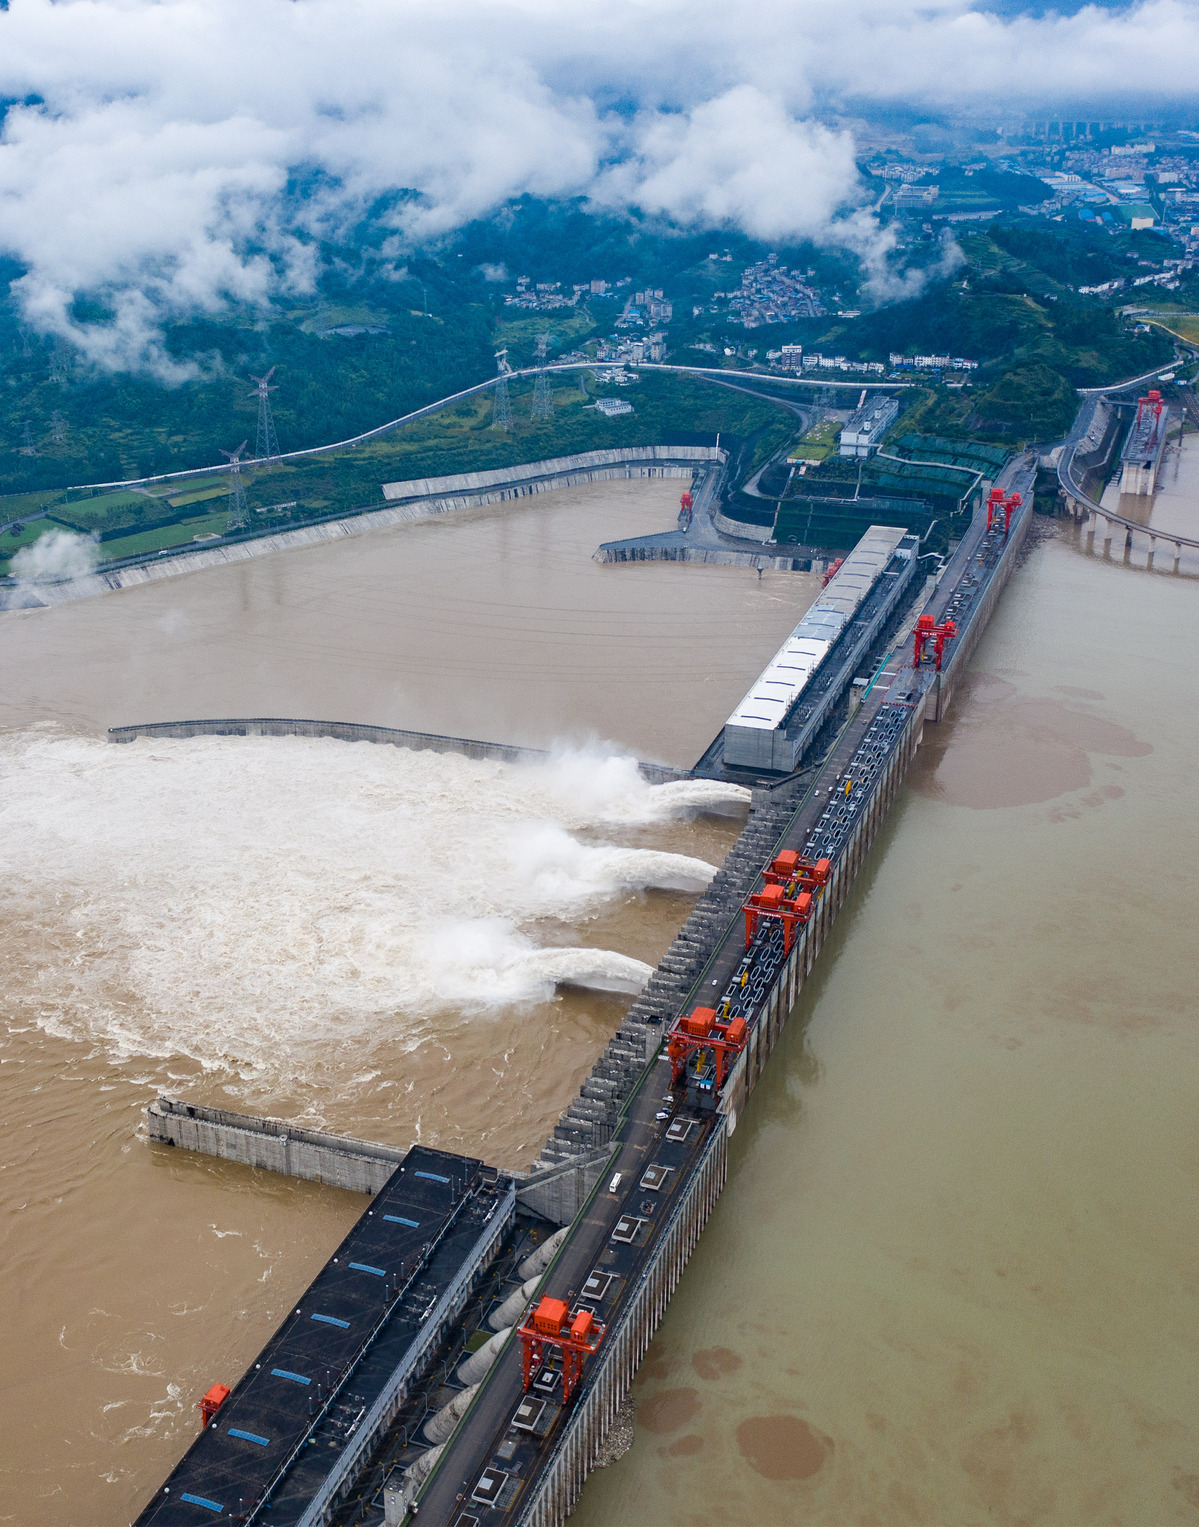 La presa de las Tres Gargantas en Yichang, provincia de Hubei, descarga aguas de inundación el 2 de julio de 2020. [Foto/Xinhua]